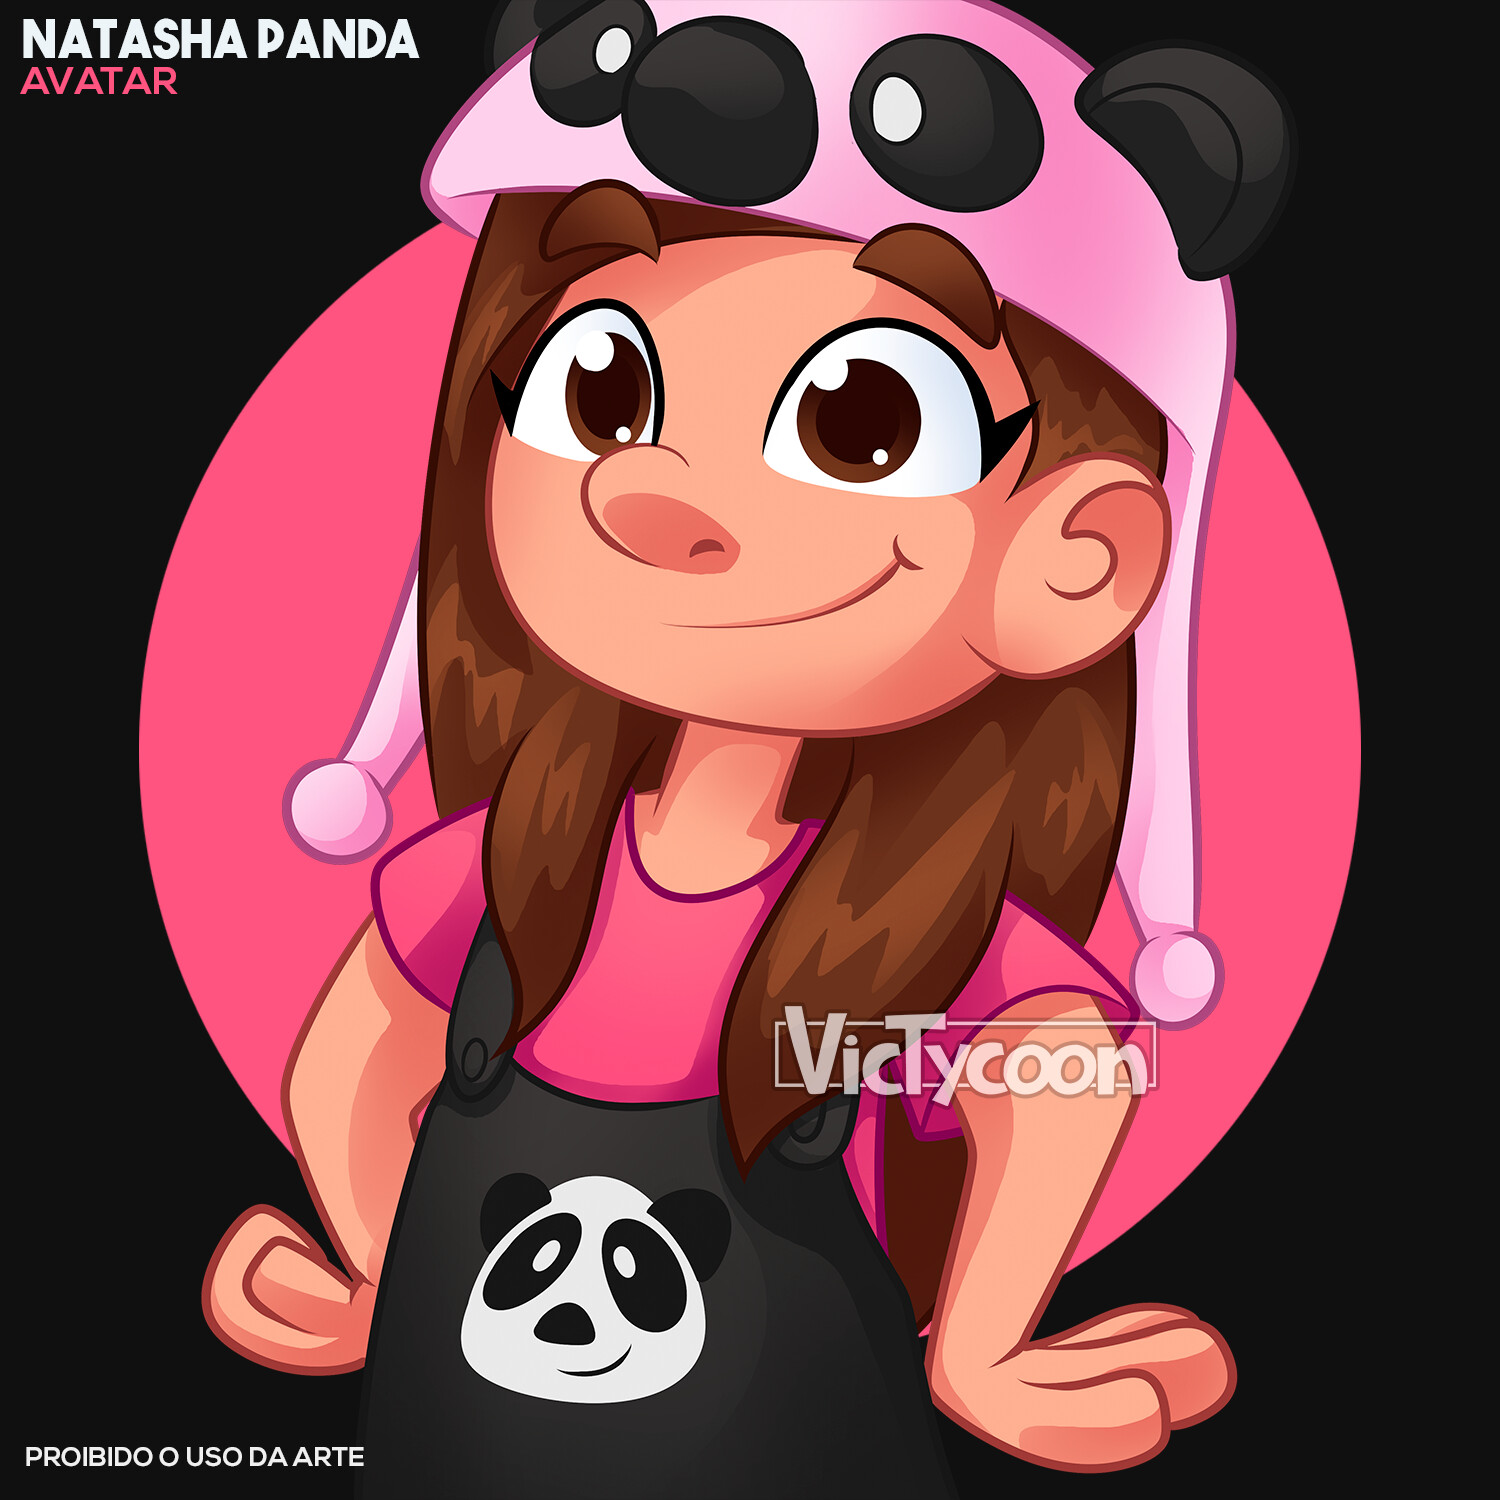 Fan club Natasha Panda🐼 on X: Homenagem para a natasha panda